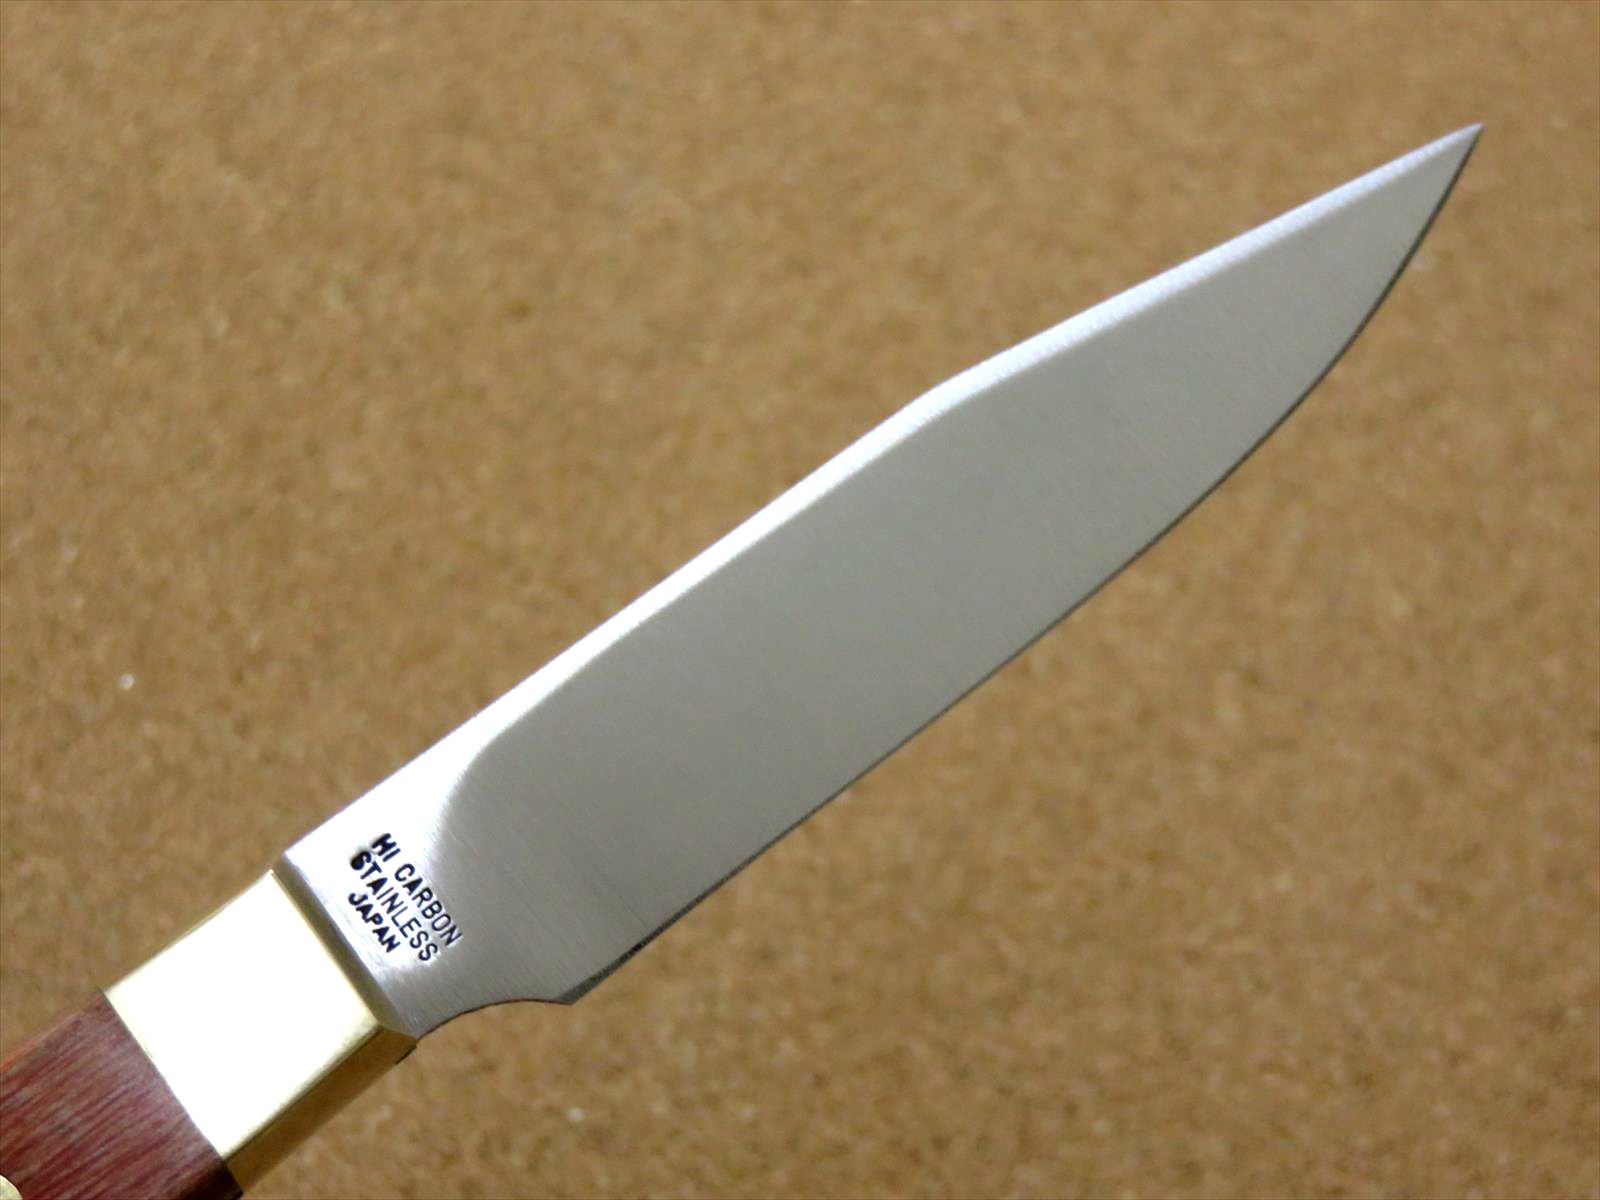 https://jp-knives.com/cdn/shop/products/th-rw-paring_4__78778.jpg?v=1692605881&width=1946